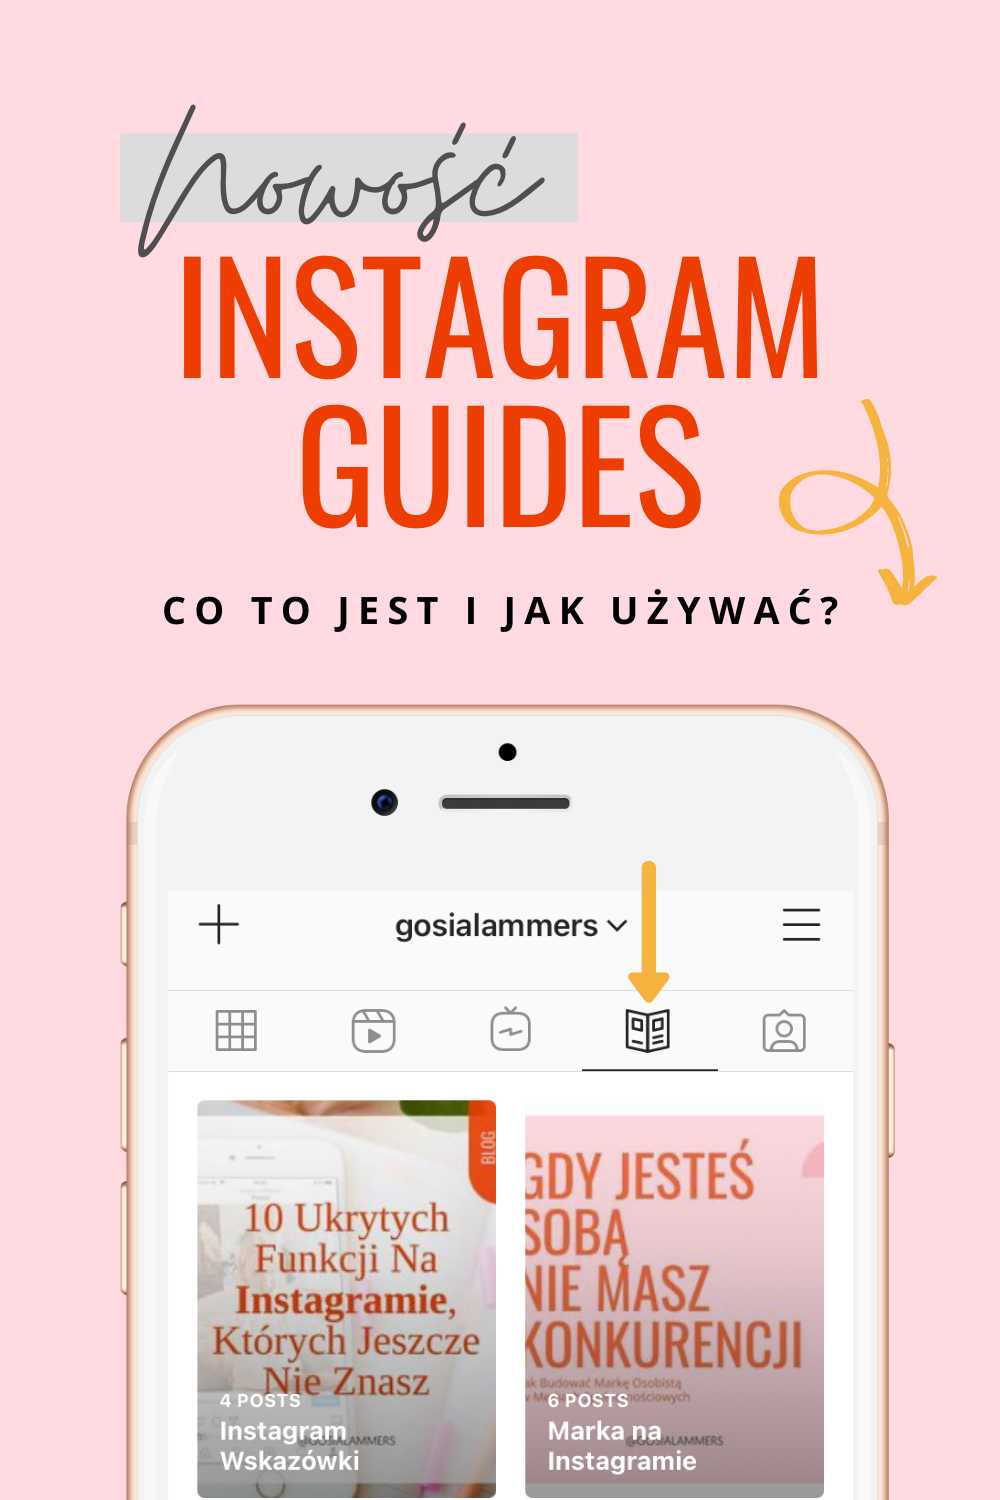 Instagram Guides jak uzywać